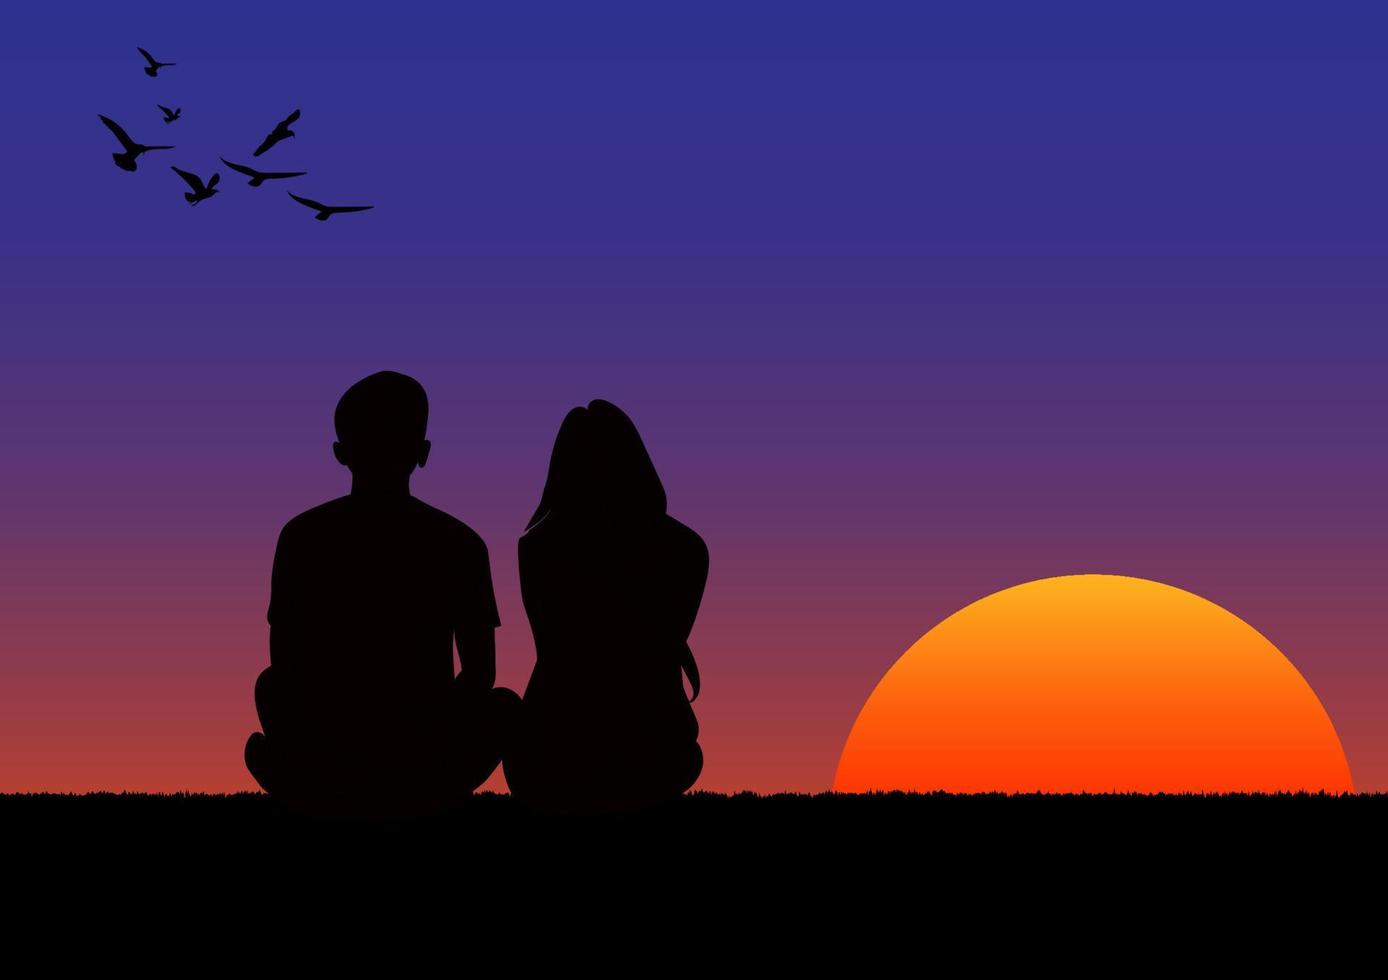 afbeeldingen tekenen paar jongen en meisje zitten met zonsondergang of zonsopgang achtergrond en licht oranje en blauw van lucht vector illustratie concept romantic